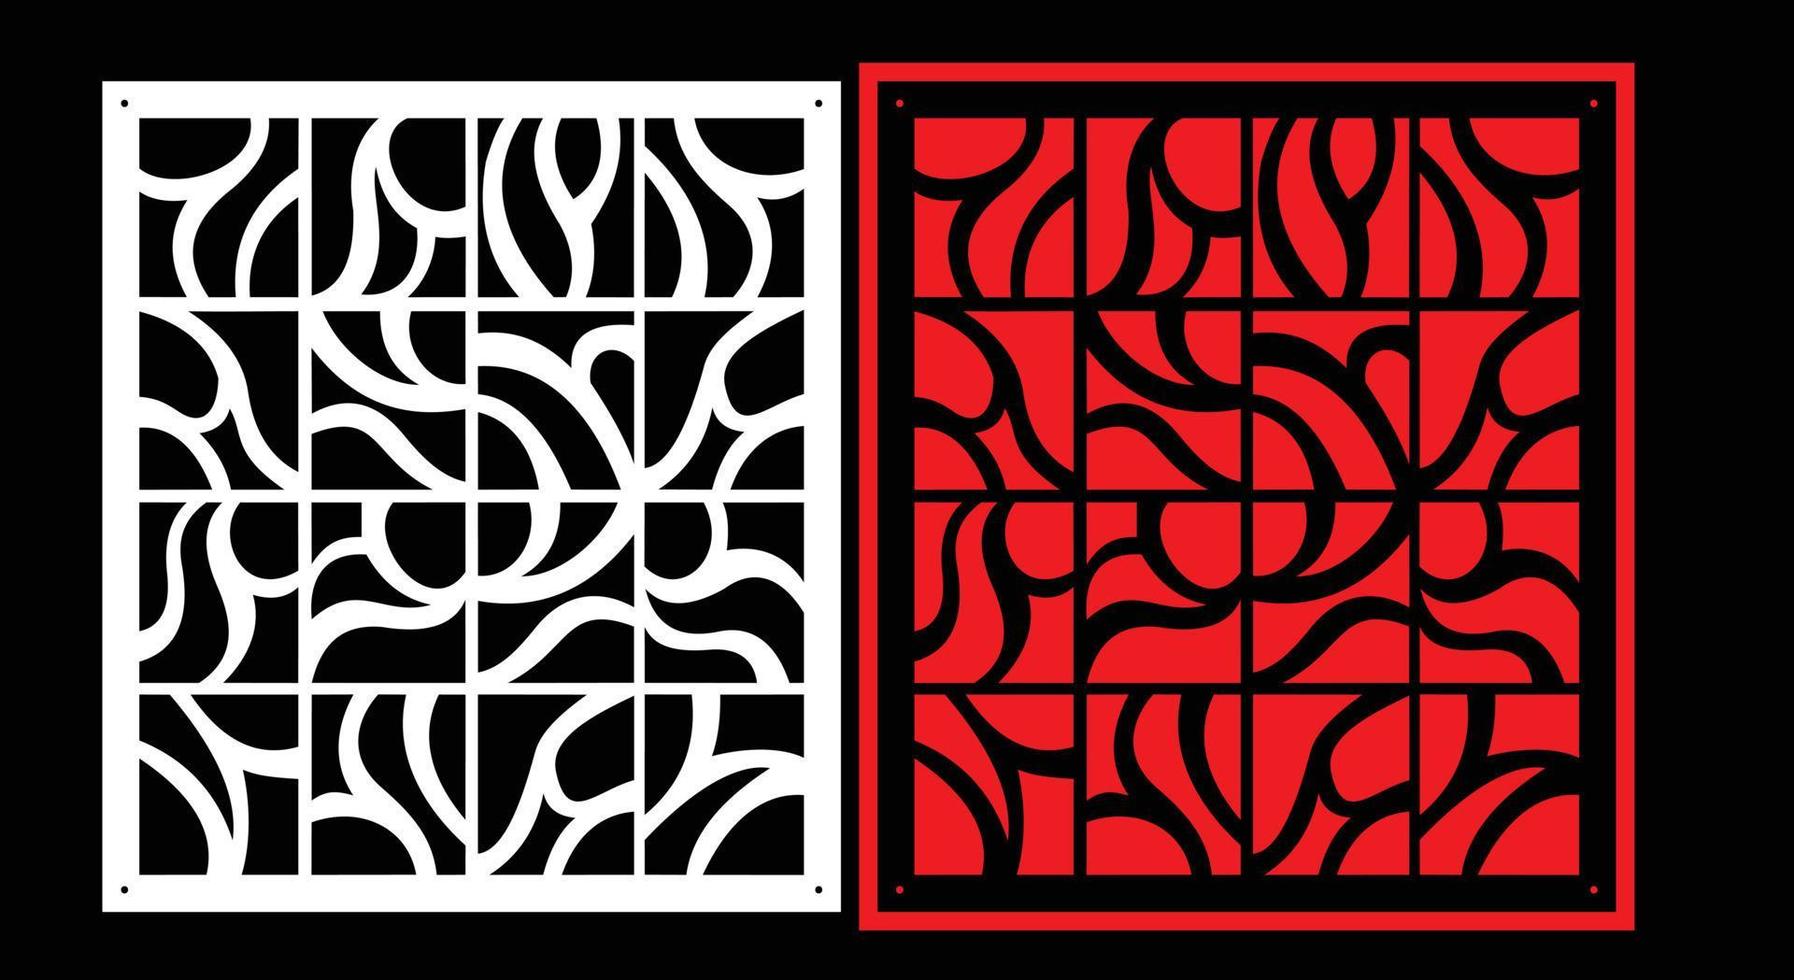 dekorativ Mauer Panel einstellen Chinesisch mdf cnc Router Laser- Schneiden Muster Design zum mdf Holz Schneiden Vektor cnc Router Design Schaumstoffplatte, Acryl und cnc Maschine Schneiden, eps Datei.